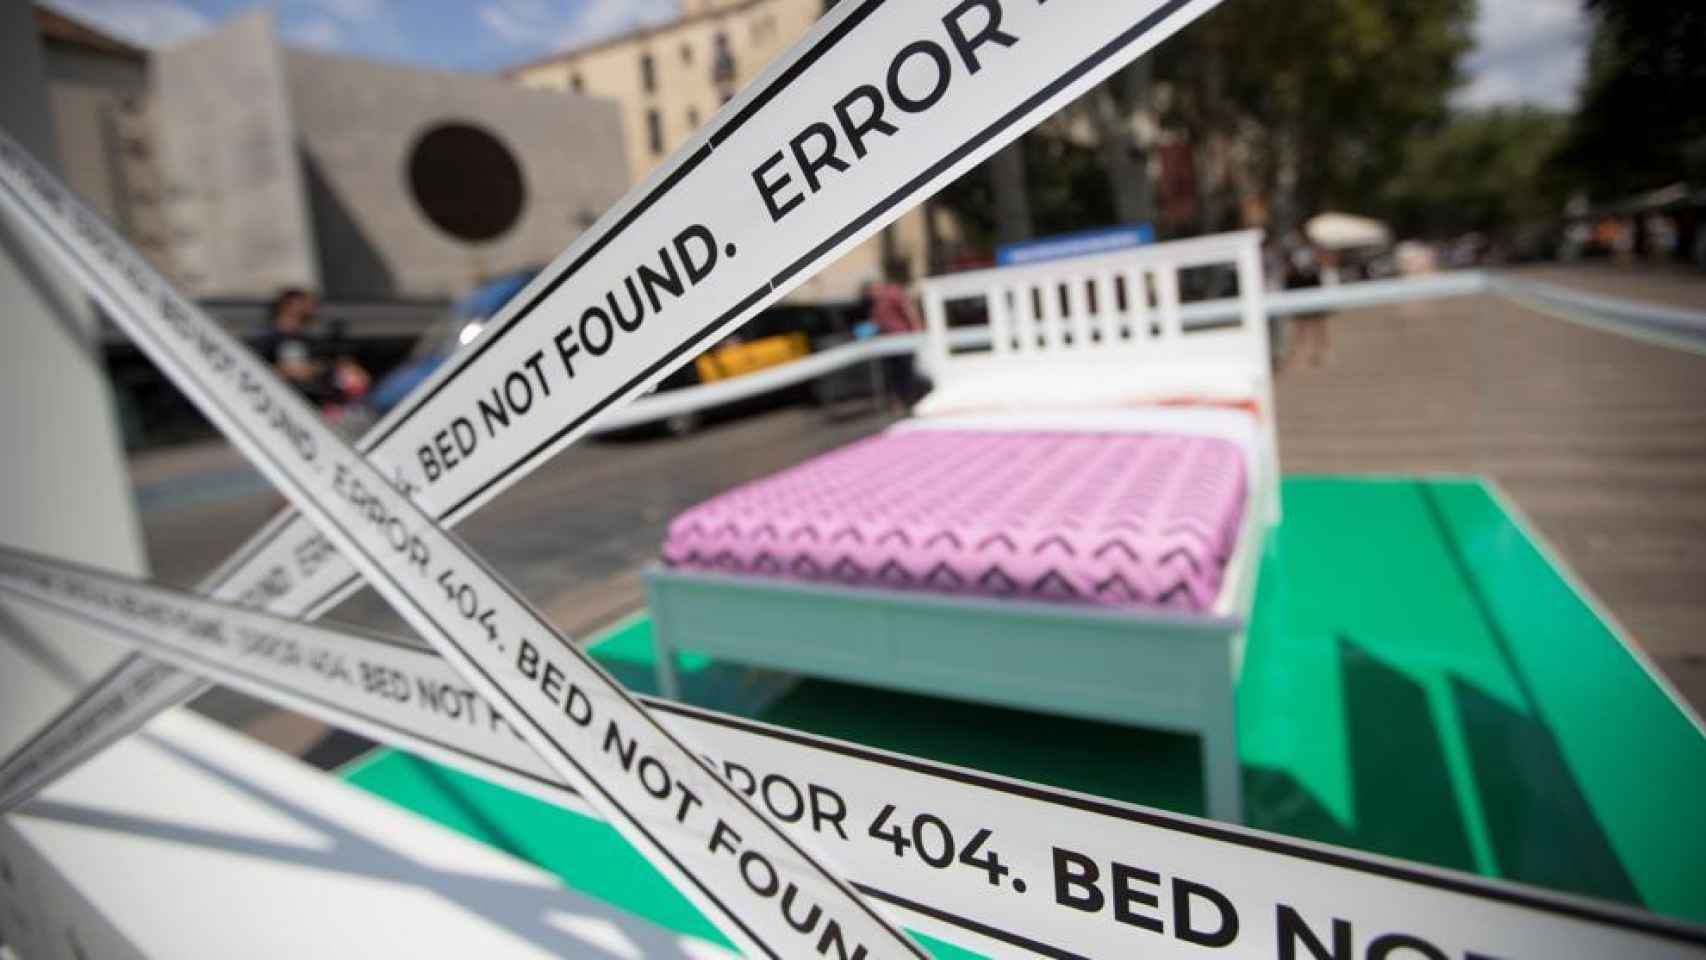 Una cama instalada por el Ayuntamiento de Barcelona en la calle para indicar que hay pisos ilegales funcionando en la zona.